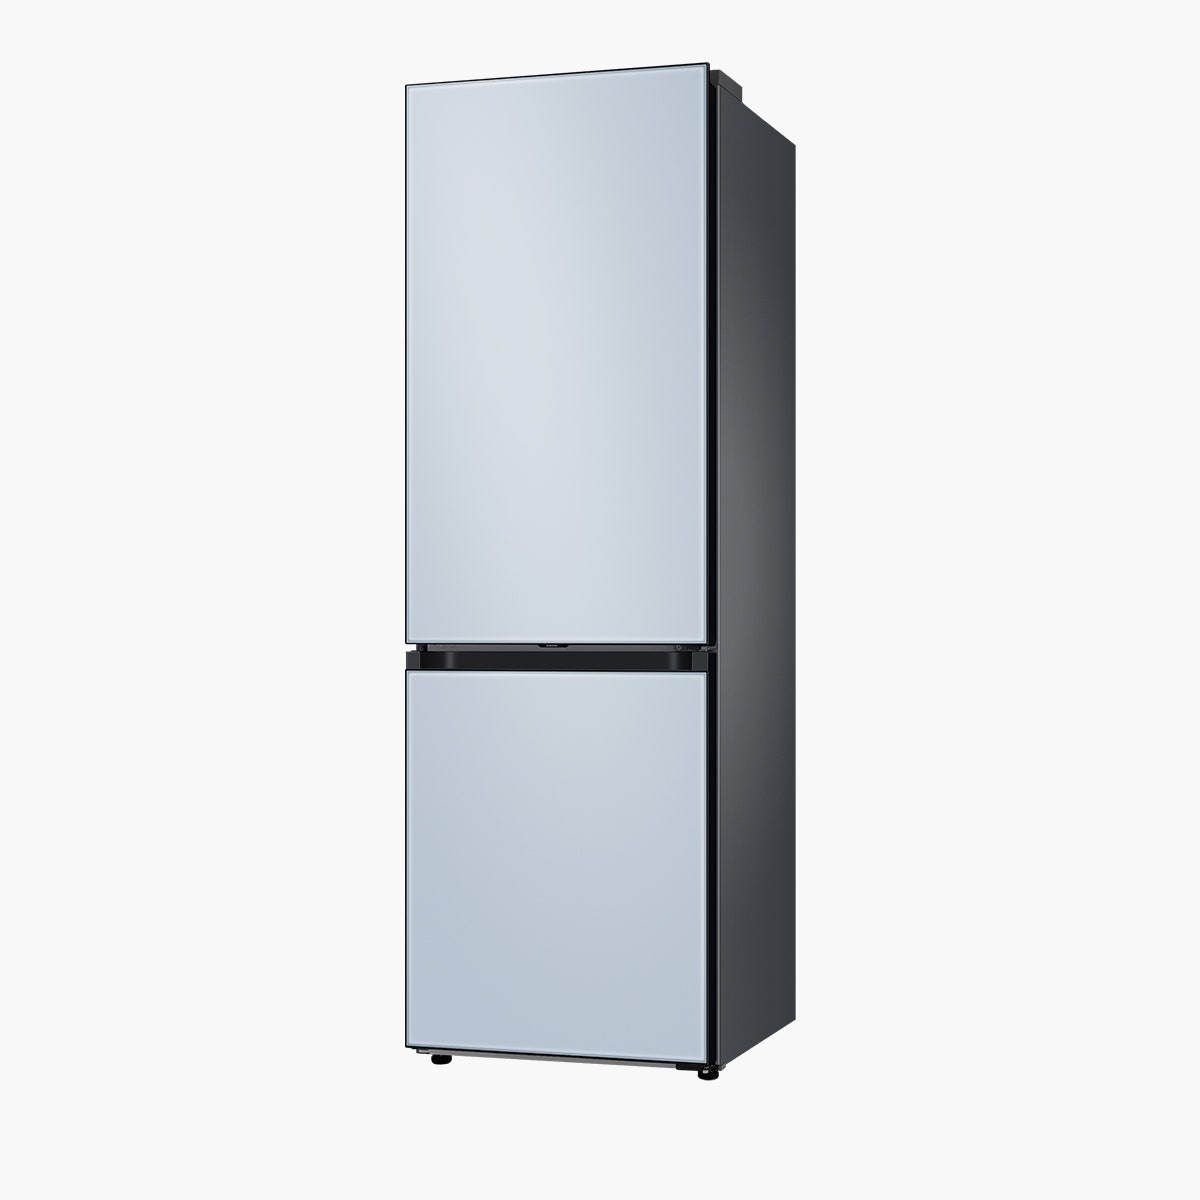 Холодильник Samsung Bespoke цена по запросу samsung.com